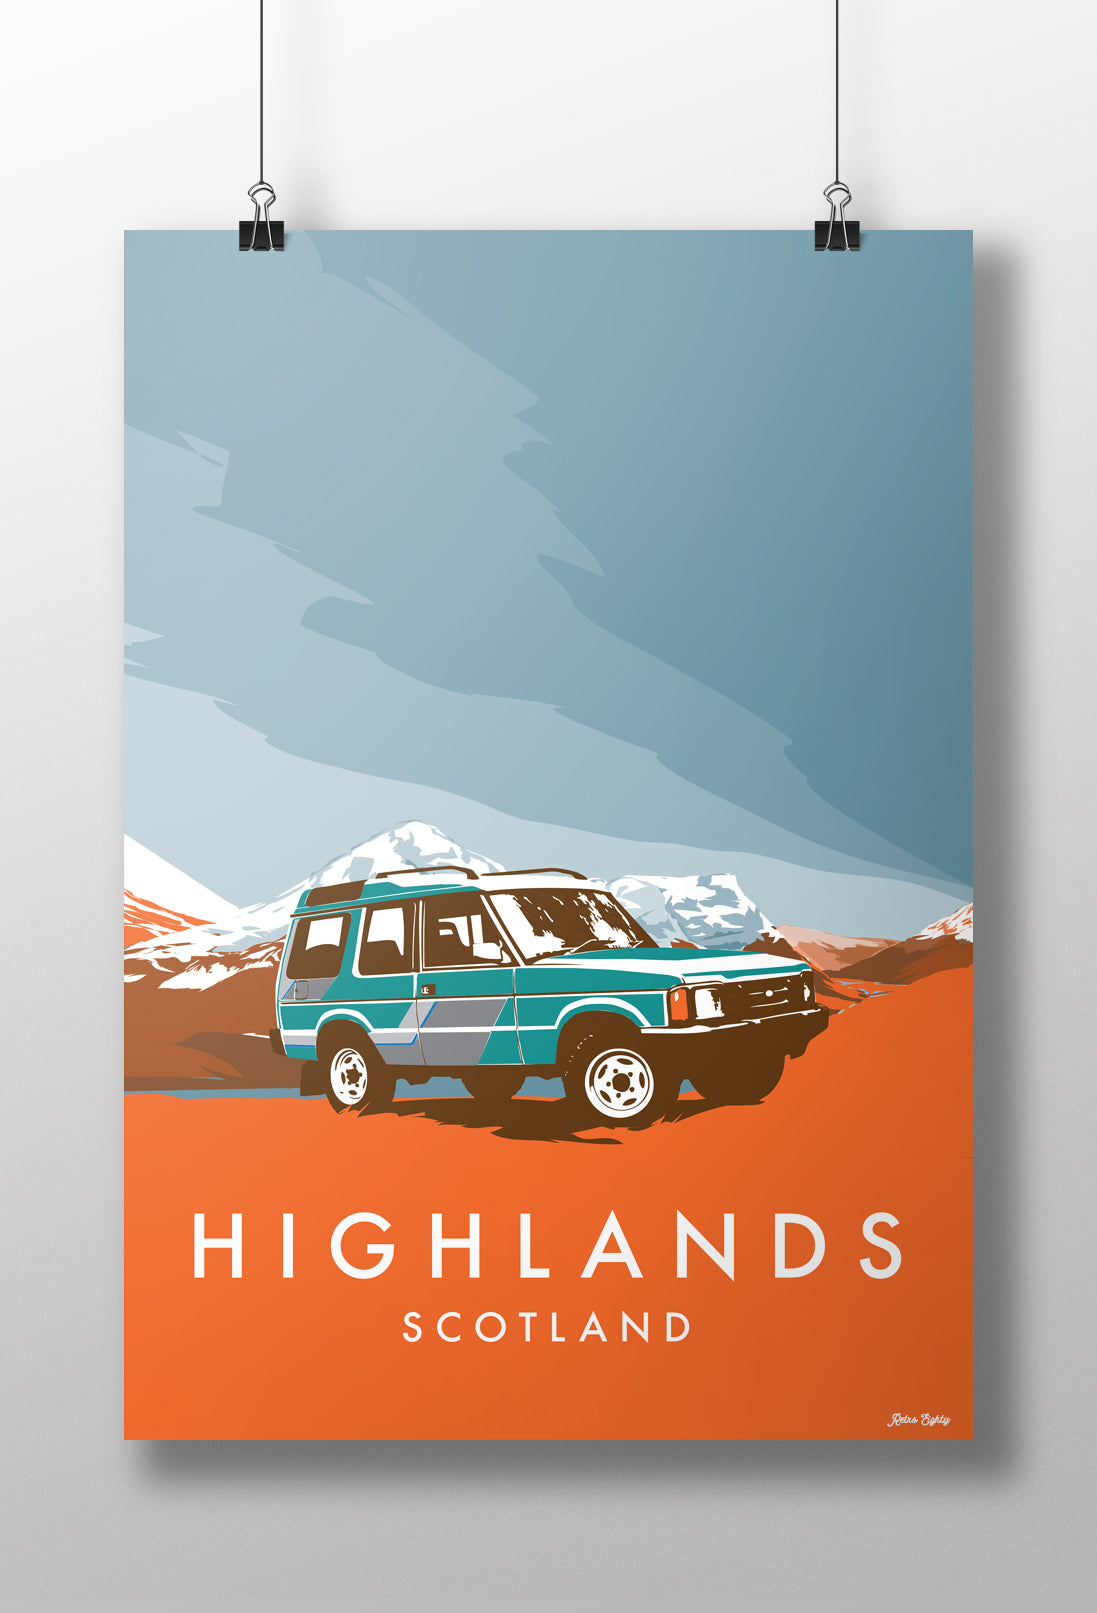 'Highlands' prints